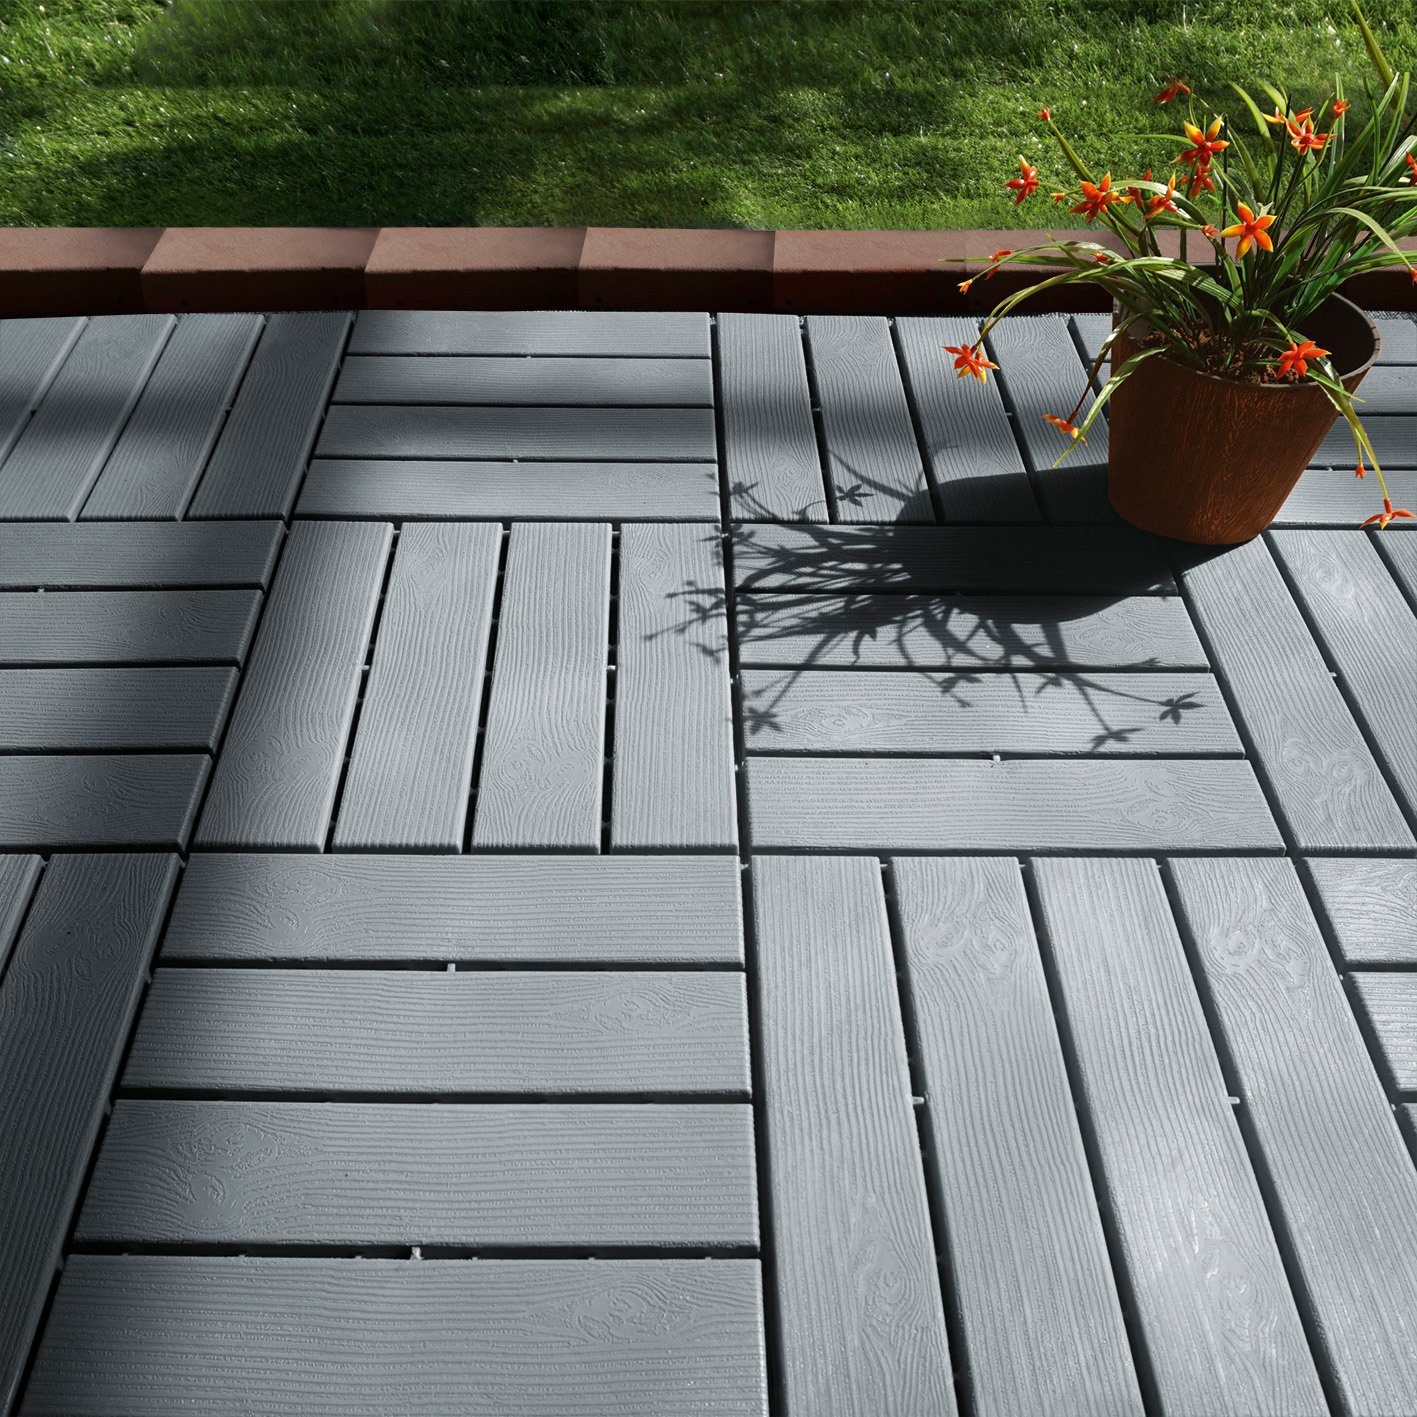 MAXXMEE Terrassenplatte Balkonfliesen - 12er Holz-Optik mit Gartenfliesen - UV-Schutz 31x31, grau Grau, 31x31cm, Set